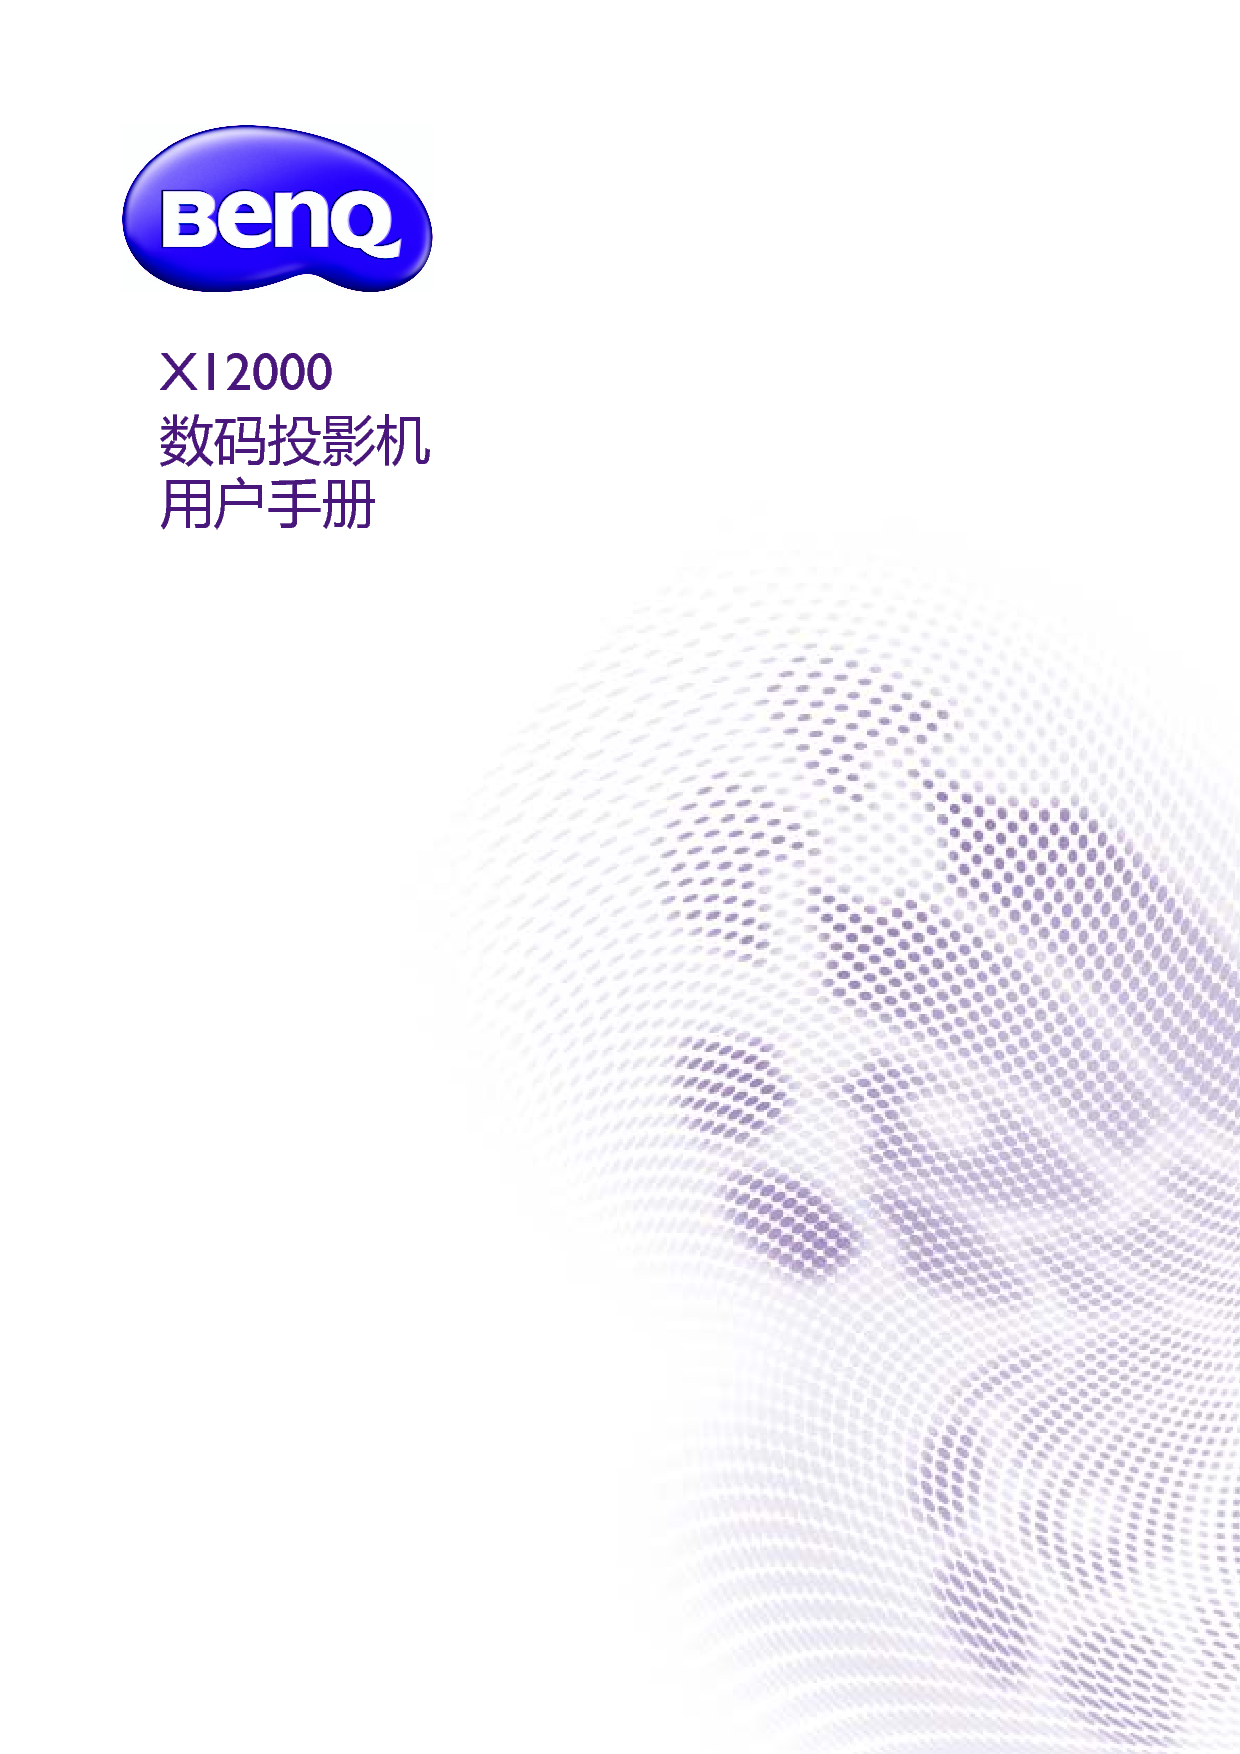 明基 Benq X12000 用户手册 封面